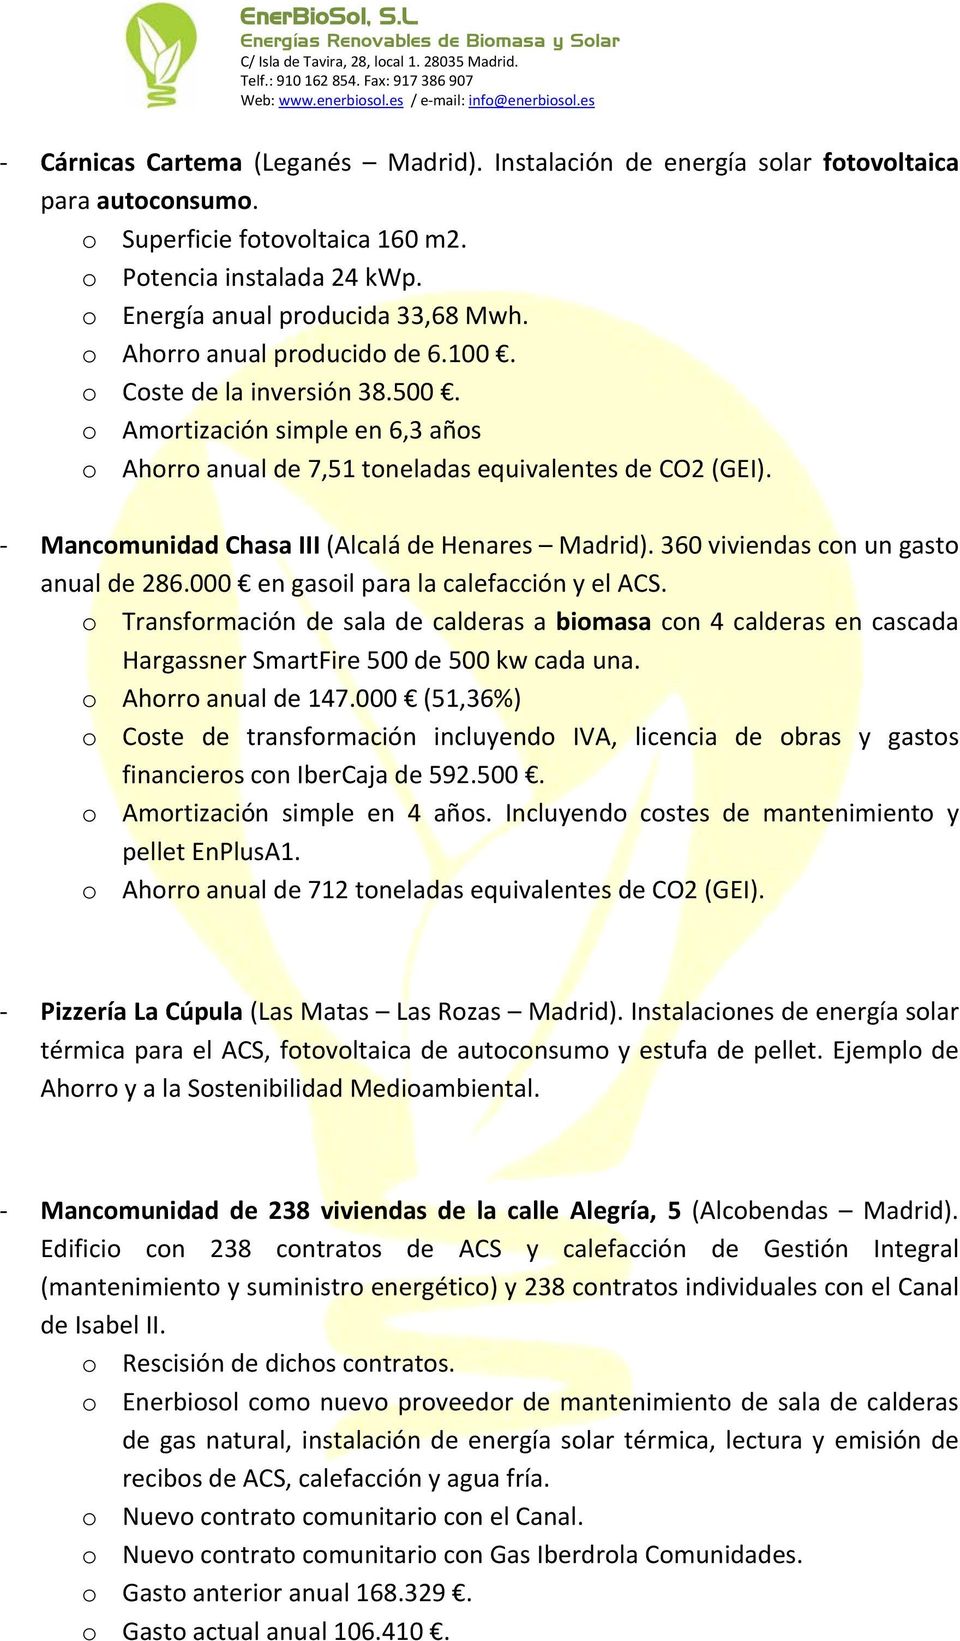 Mancomunidad Chasa III (Alcalá de Henares Madrid). 360 viviendas con un gasto anual de 286.000 en gasoil para la calefacción y el ACS.